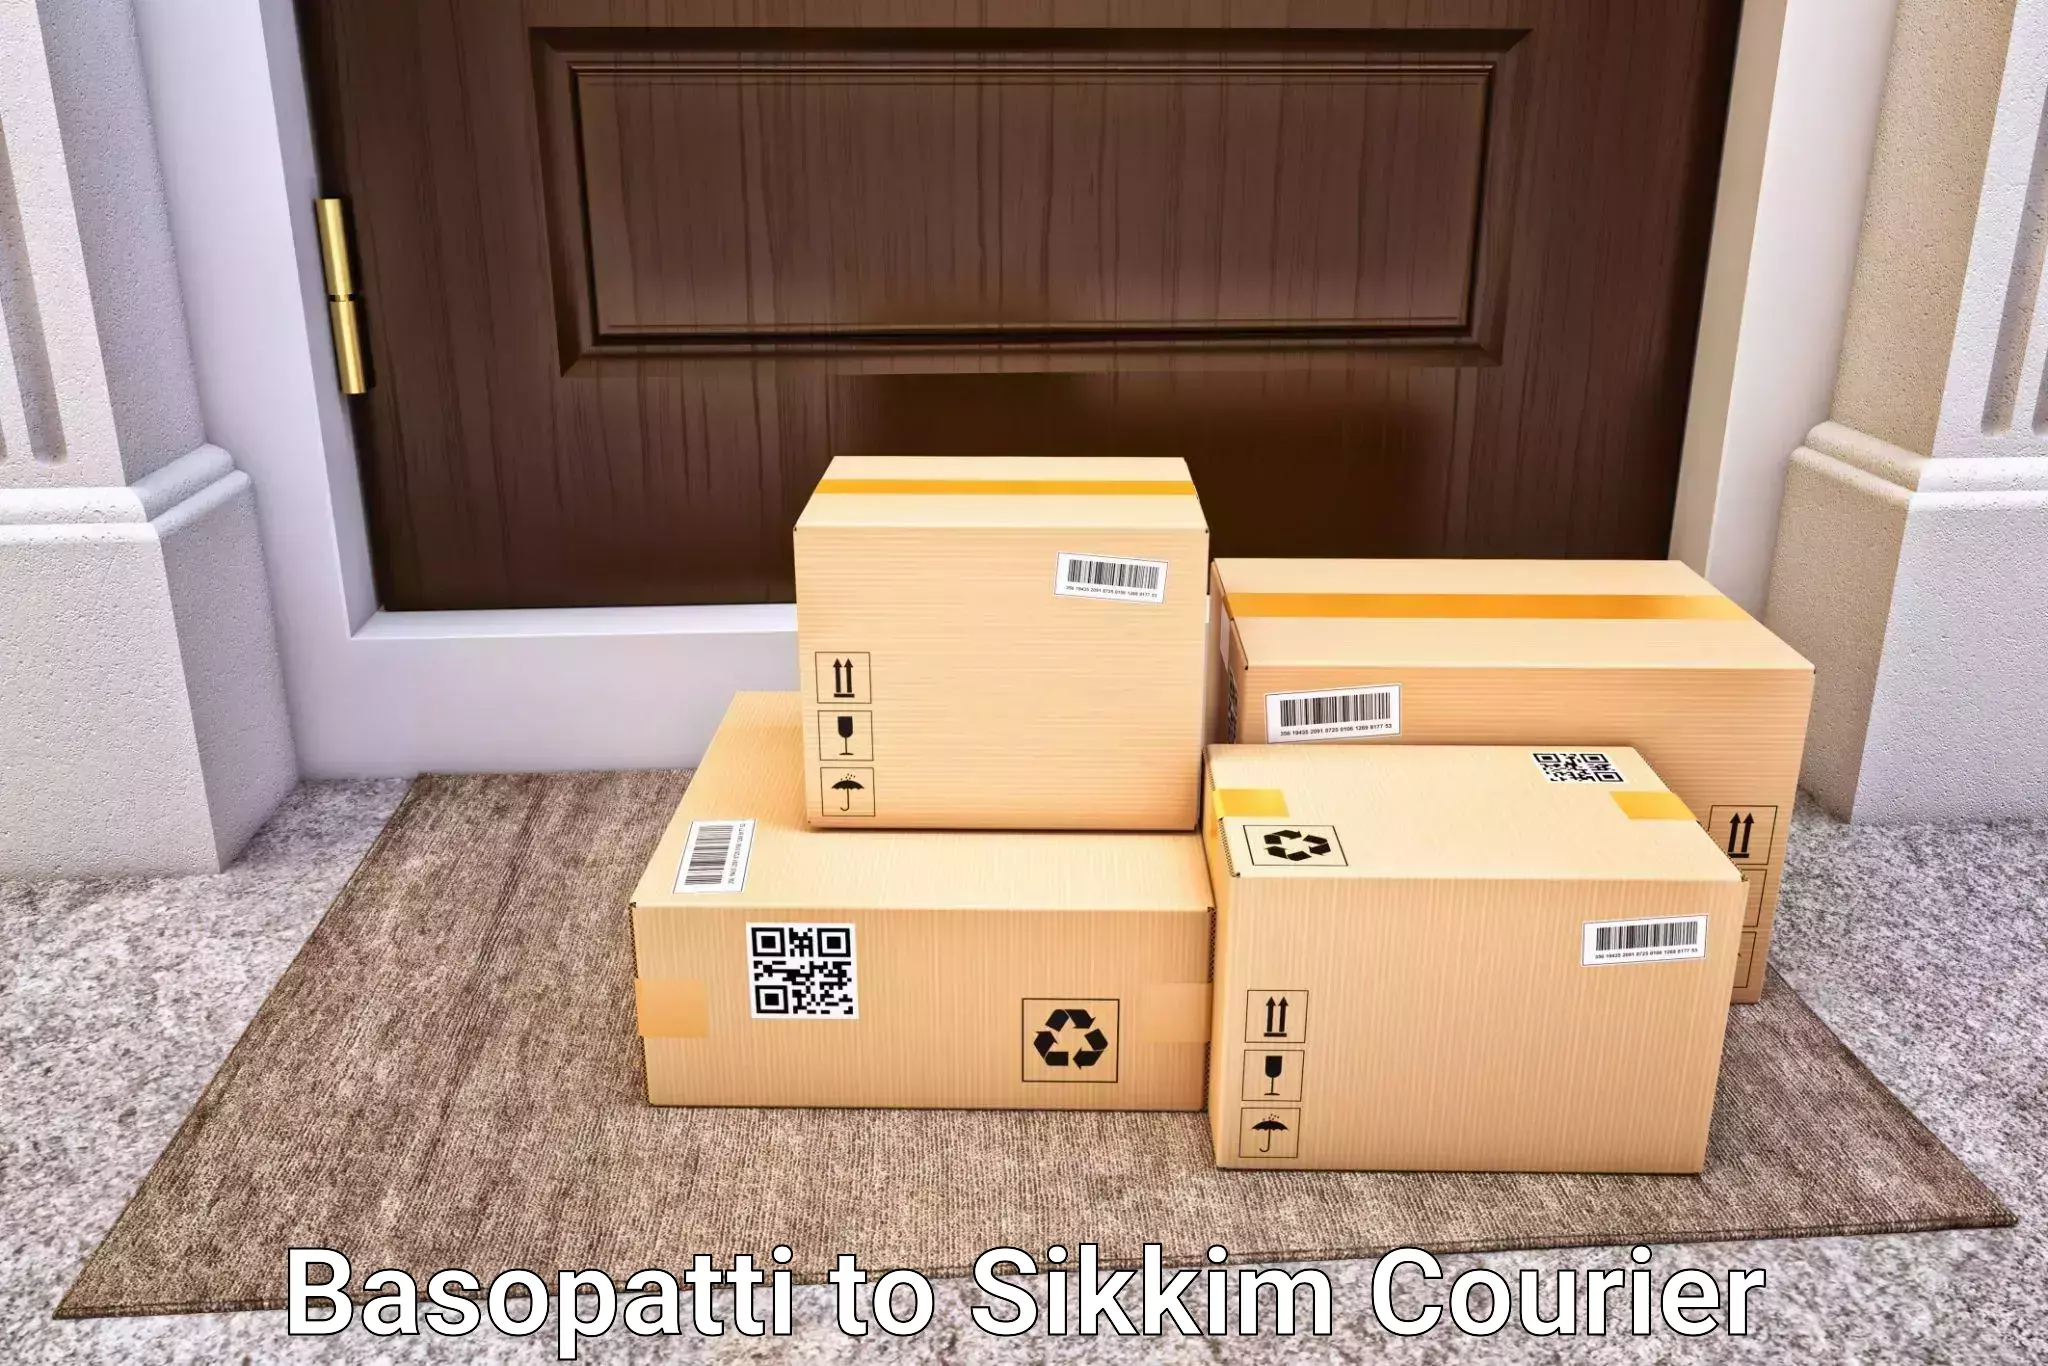 Urgent luggage shipment Basopatti to West Sikkim